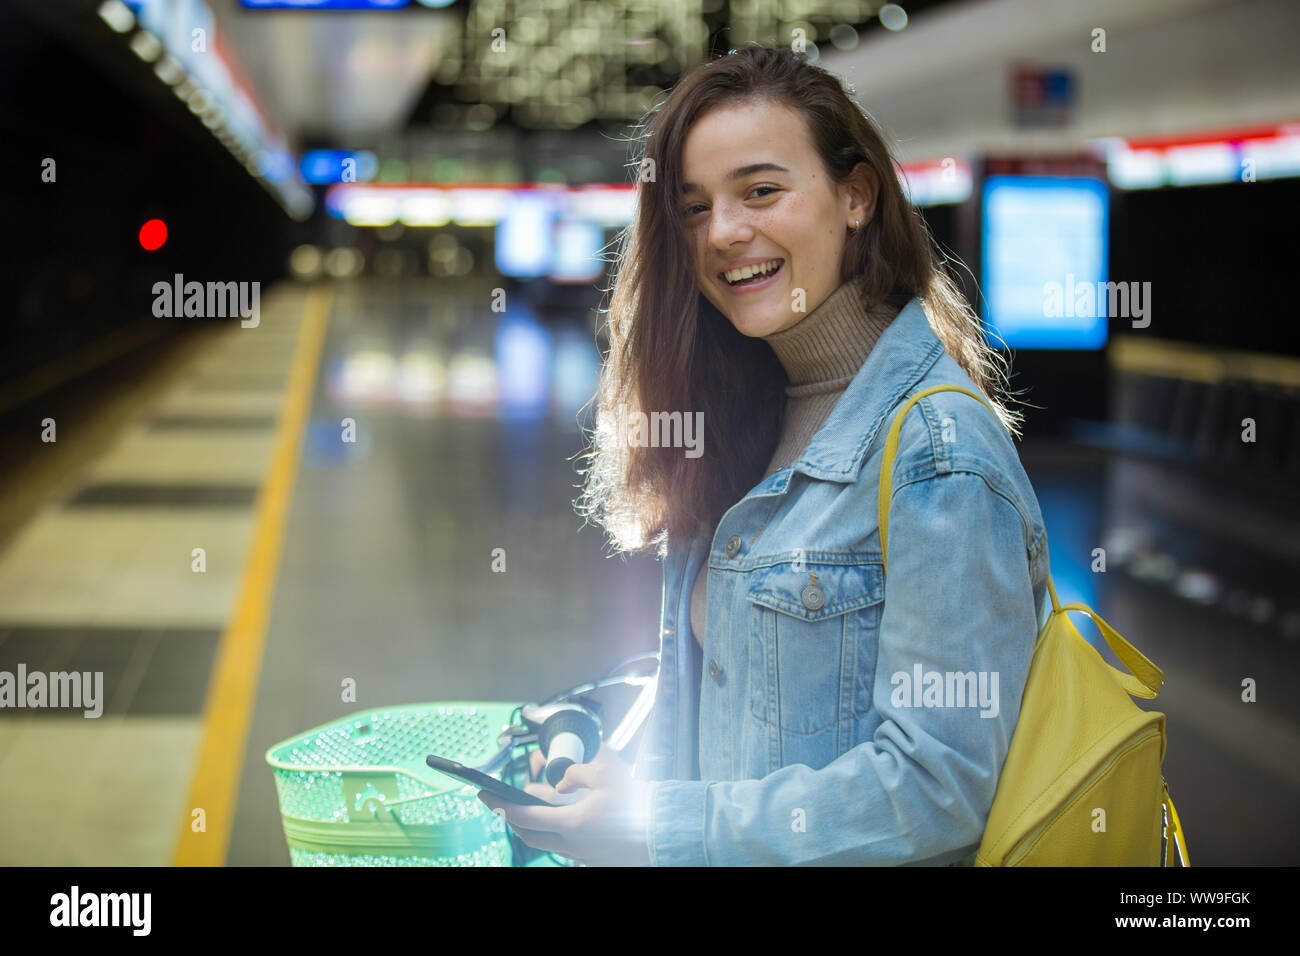 Adolescentes en jeans avec sac à dos jaune et vélo debout sur la station de métro, l'attente pour le train, sourire et rire. La station de métro futuriste Banque D'Images